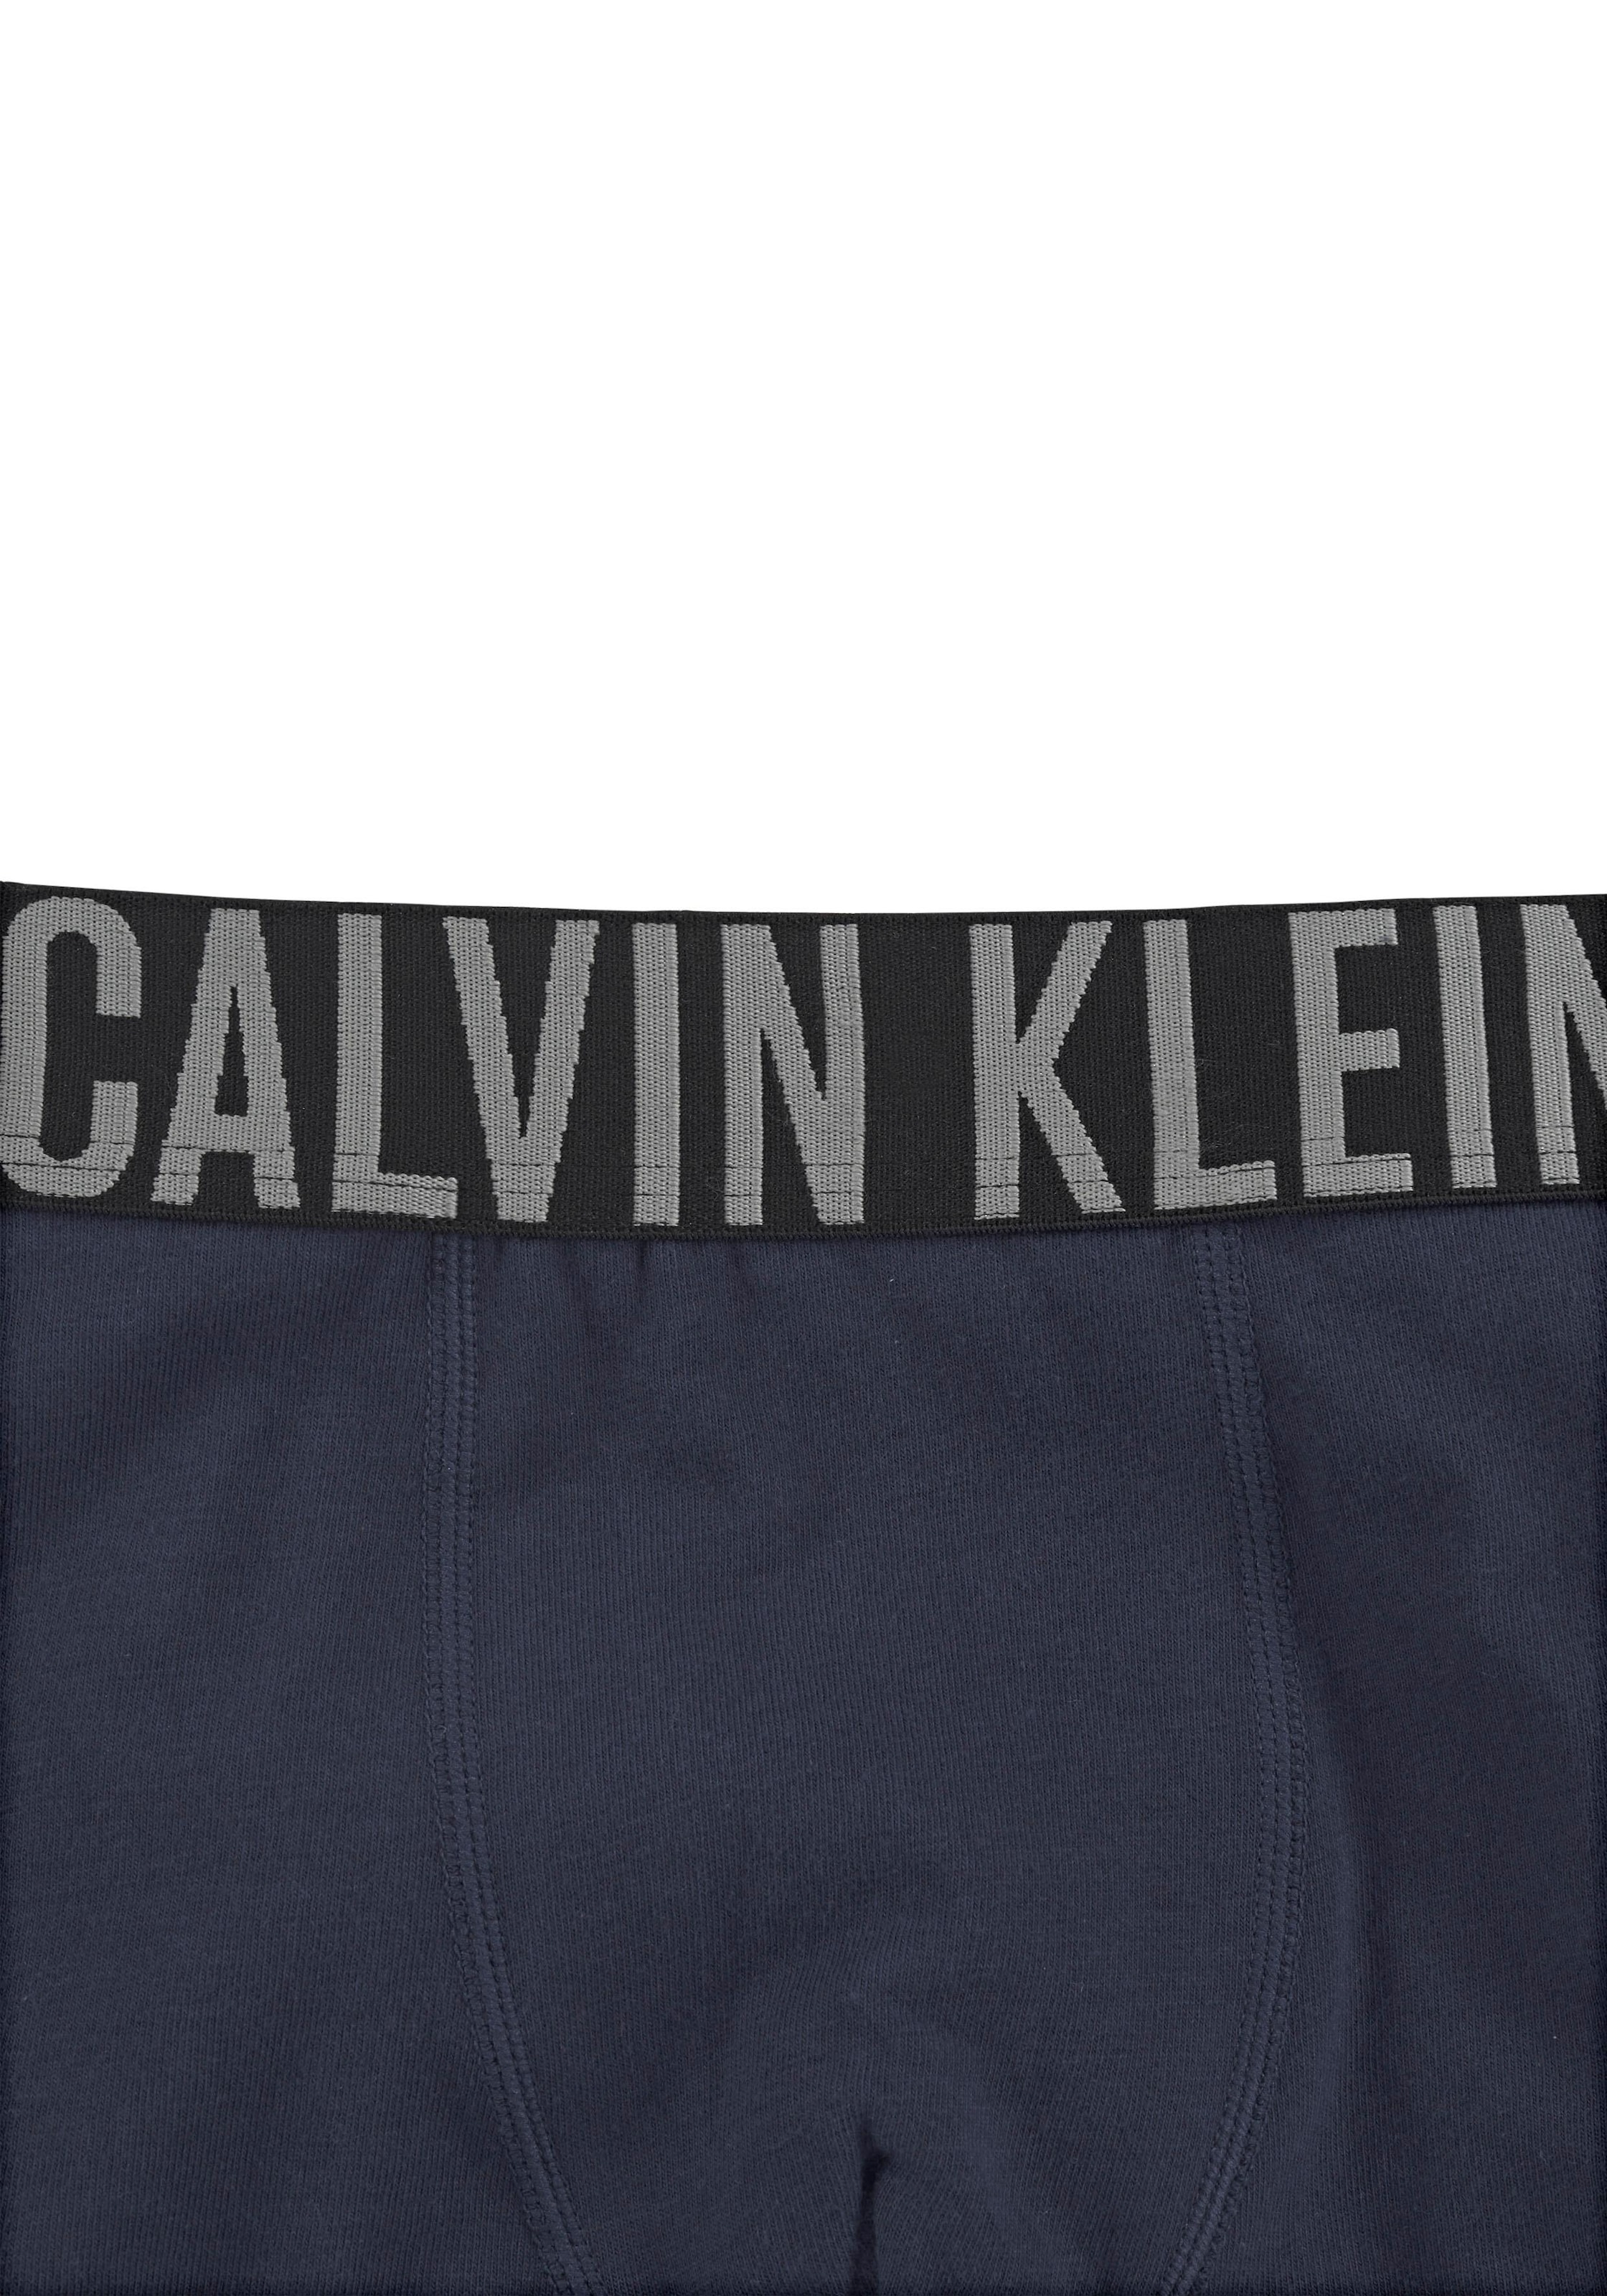 Calvin Klein Trunk »Intenese Power«, (2 St.) bestellen | BAUR